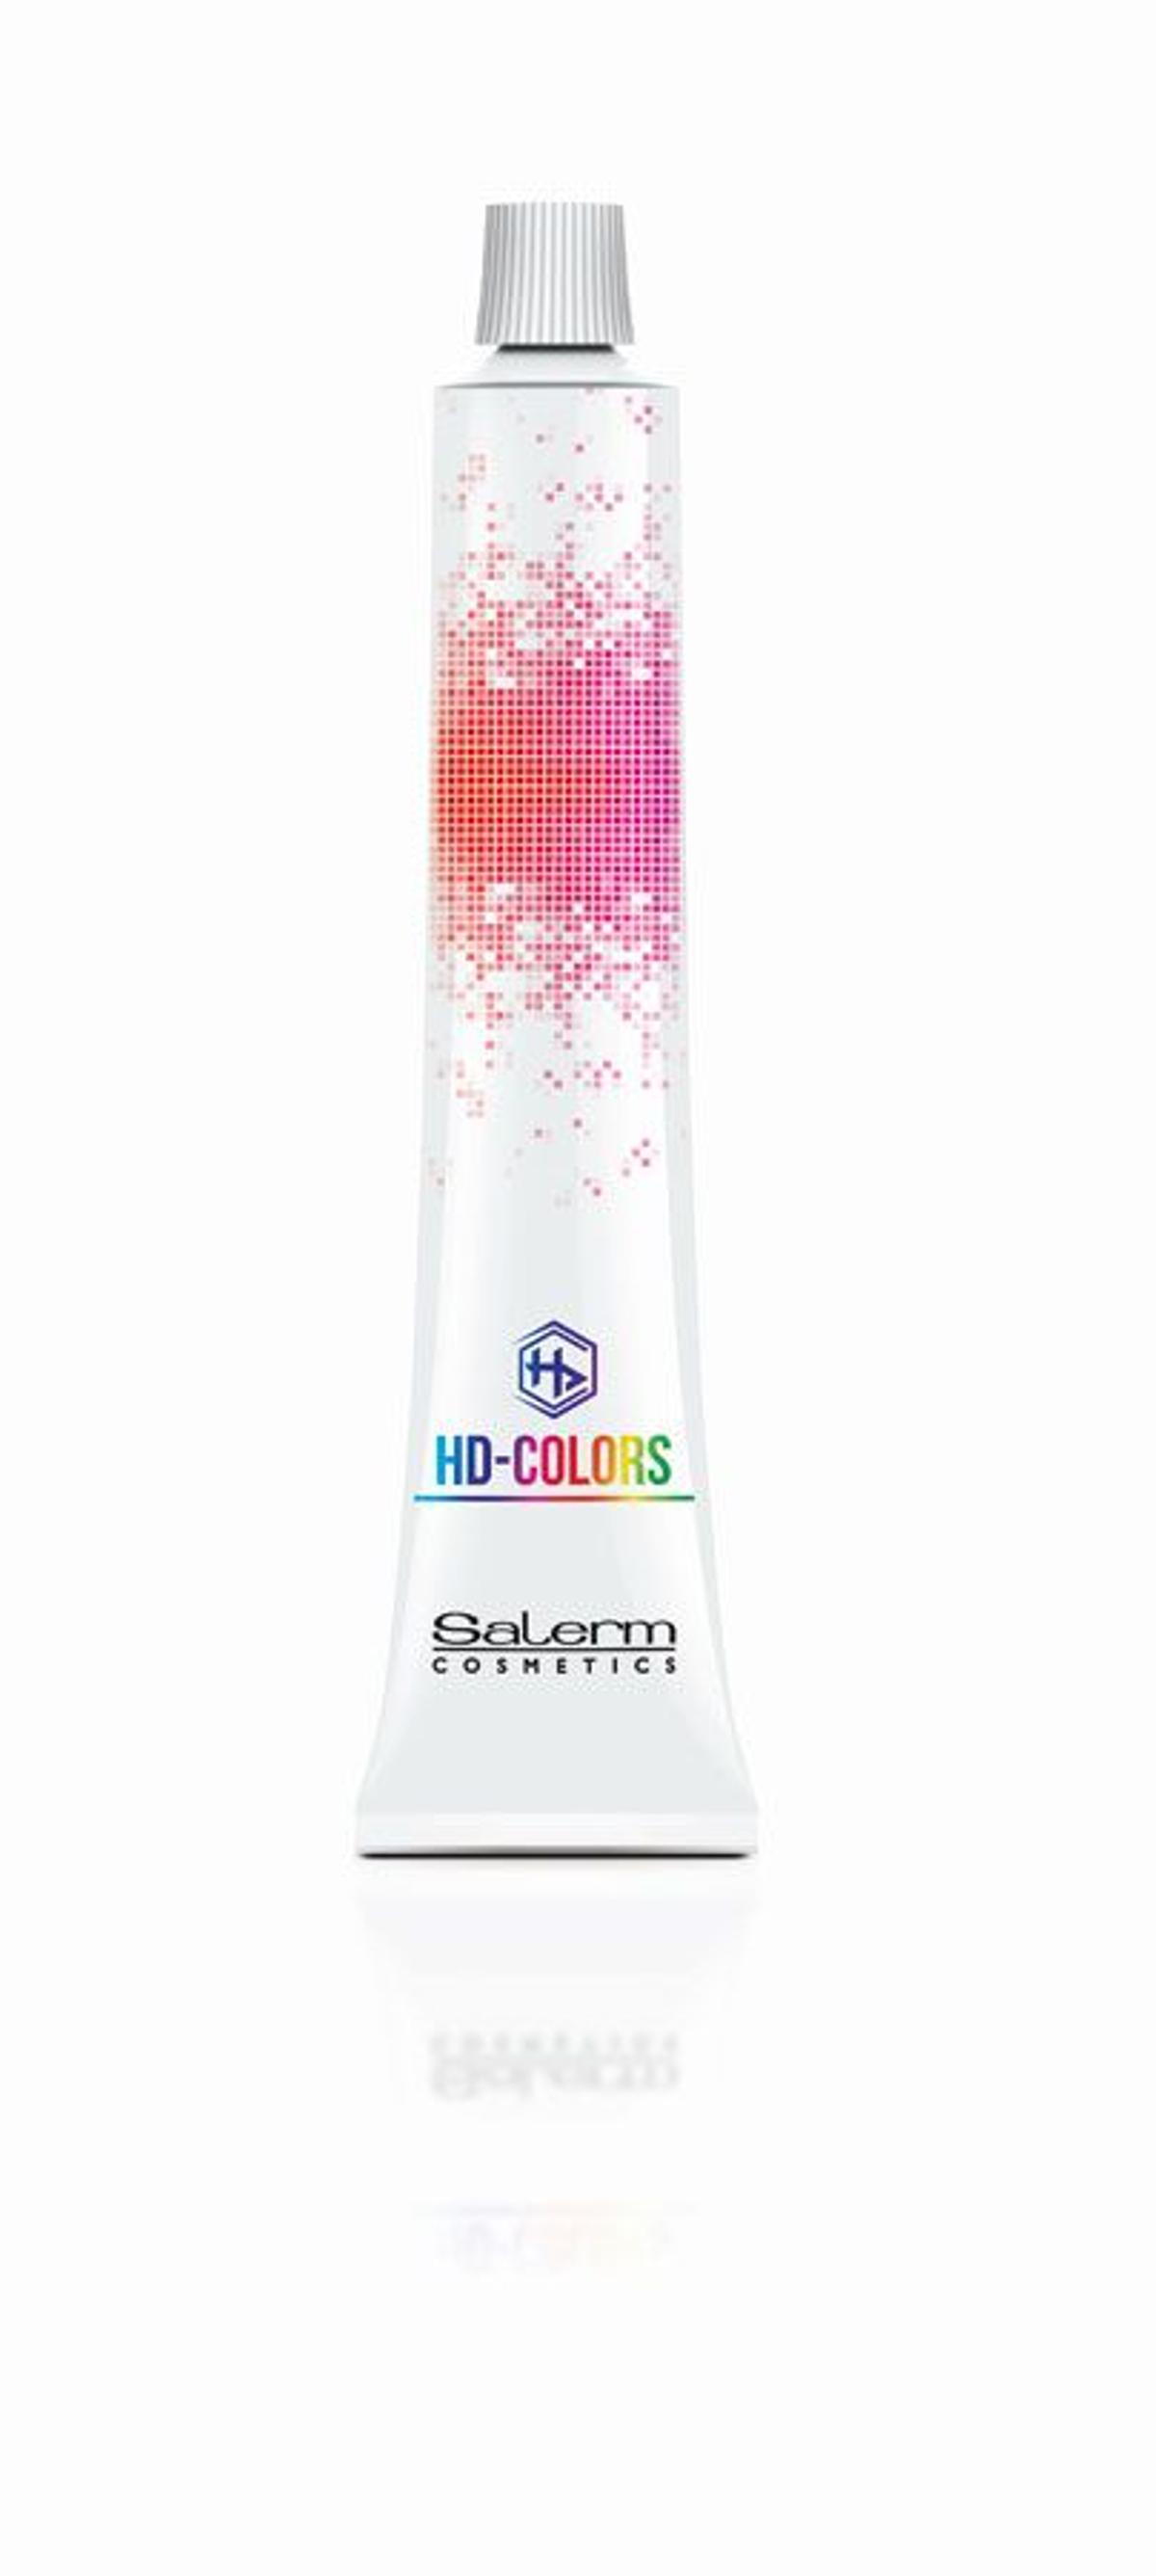 Fijar y dar brillo: Tinte semipermanente HD Colors, Salerm Cosmetics.